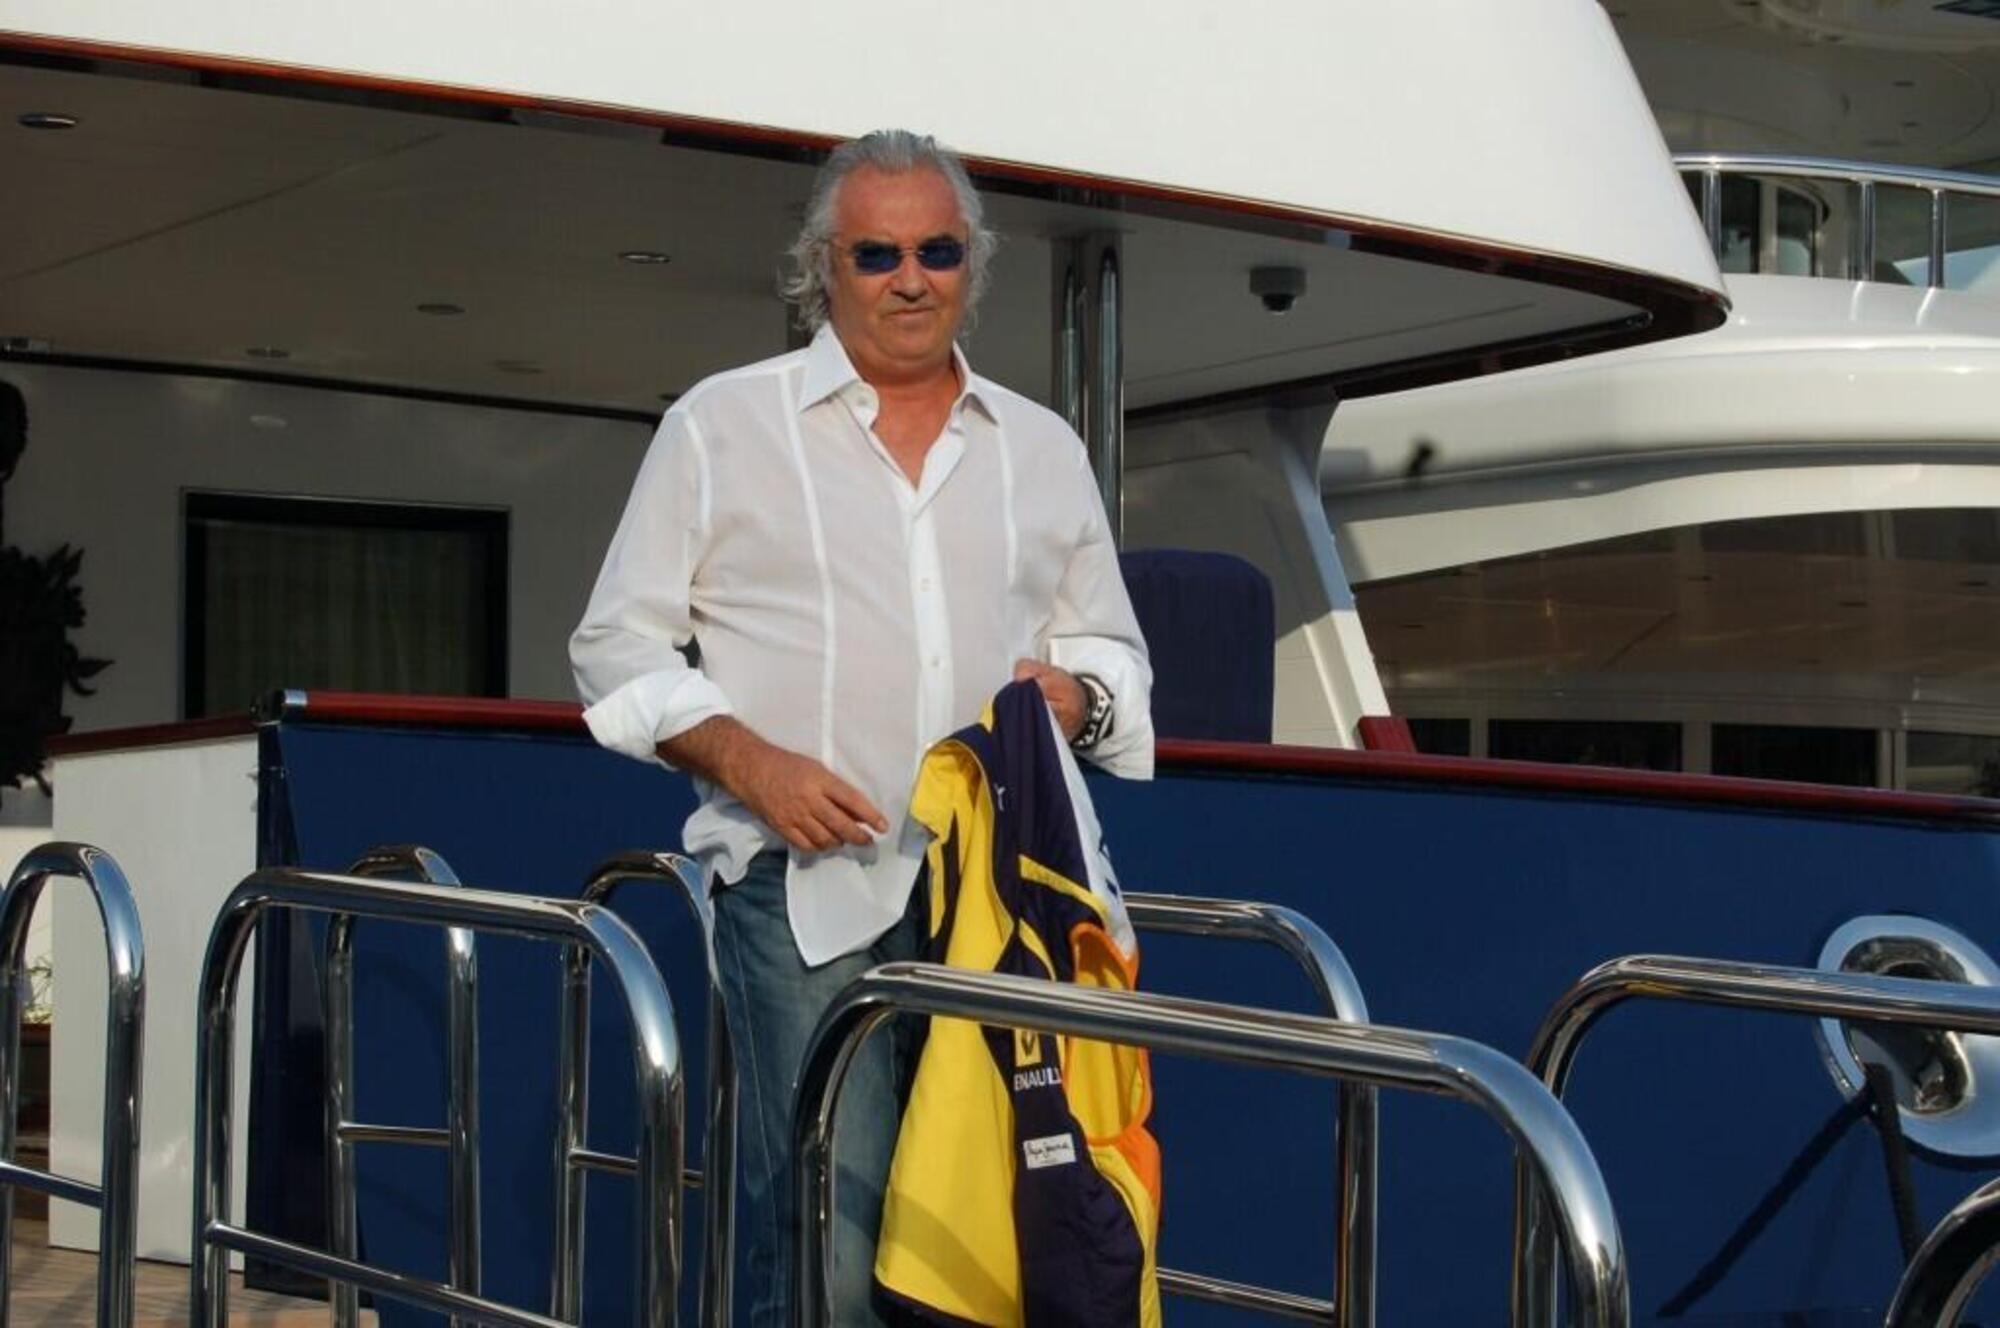 20220822 005933591 6005 Flavio Briatore sul suo yacht